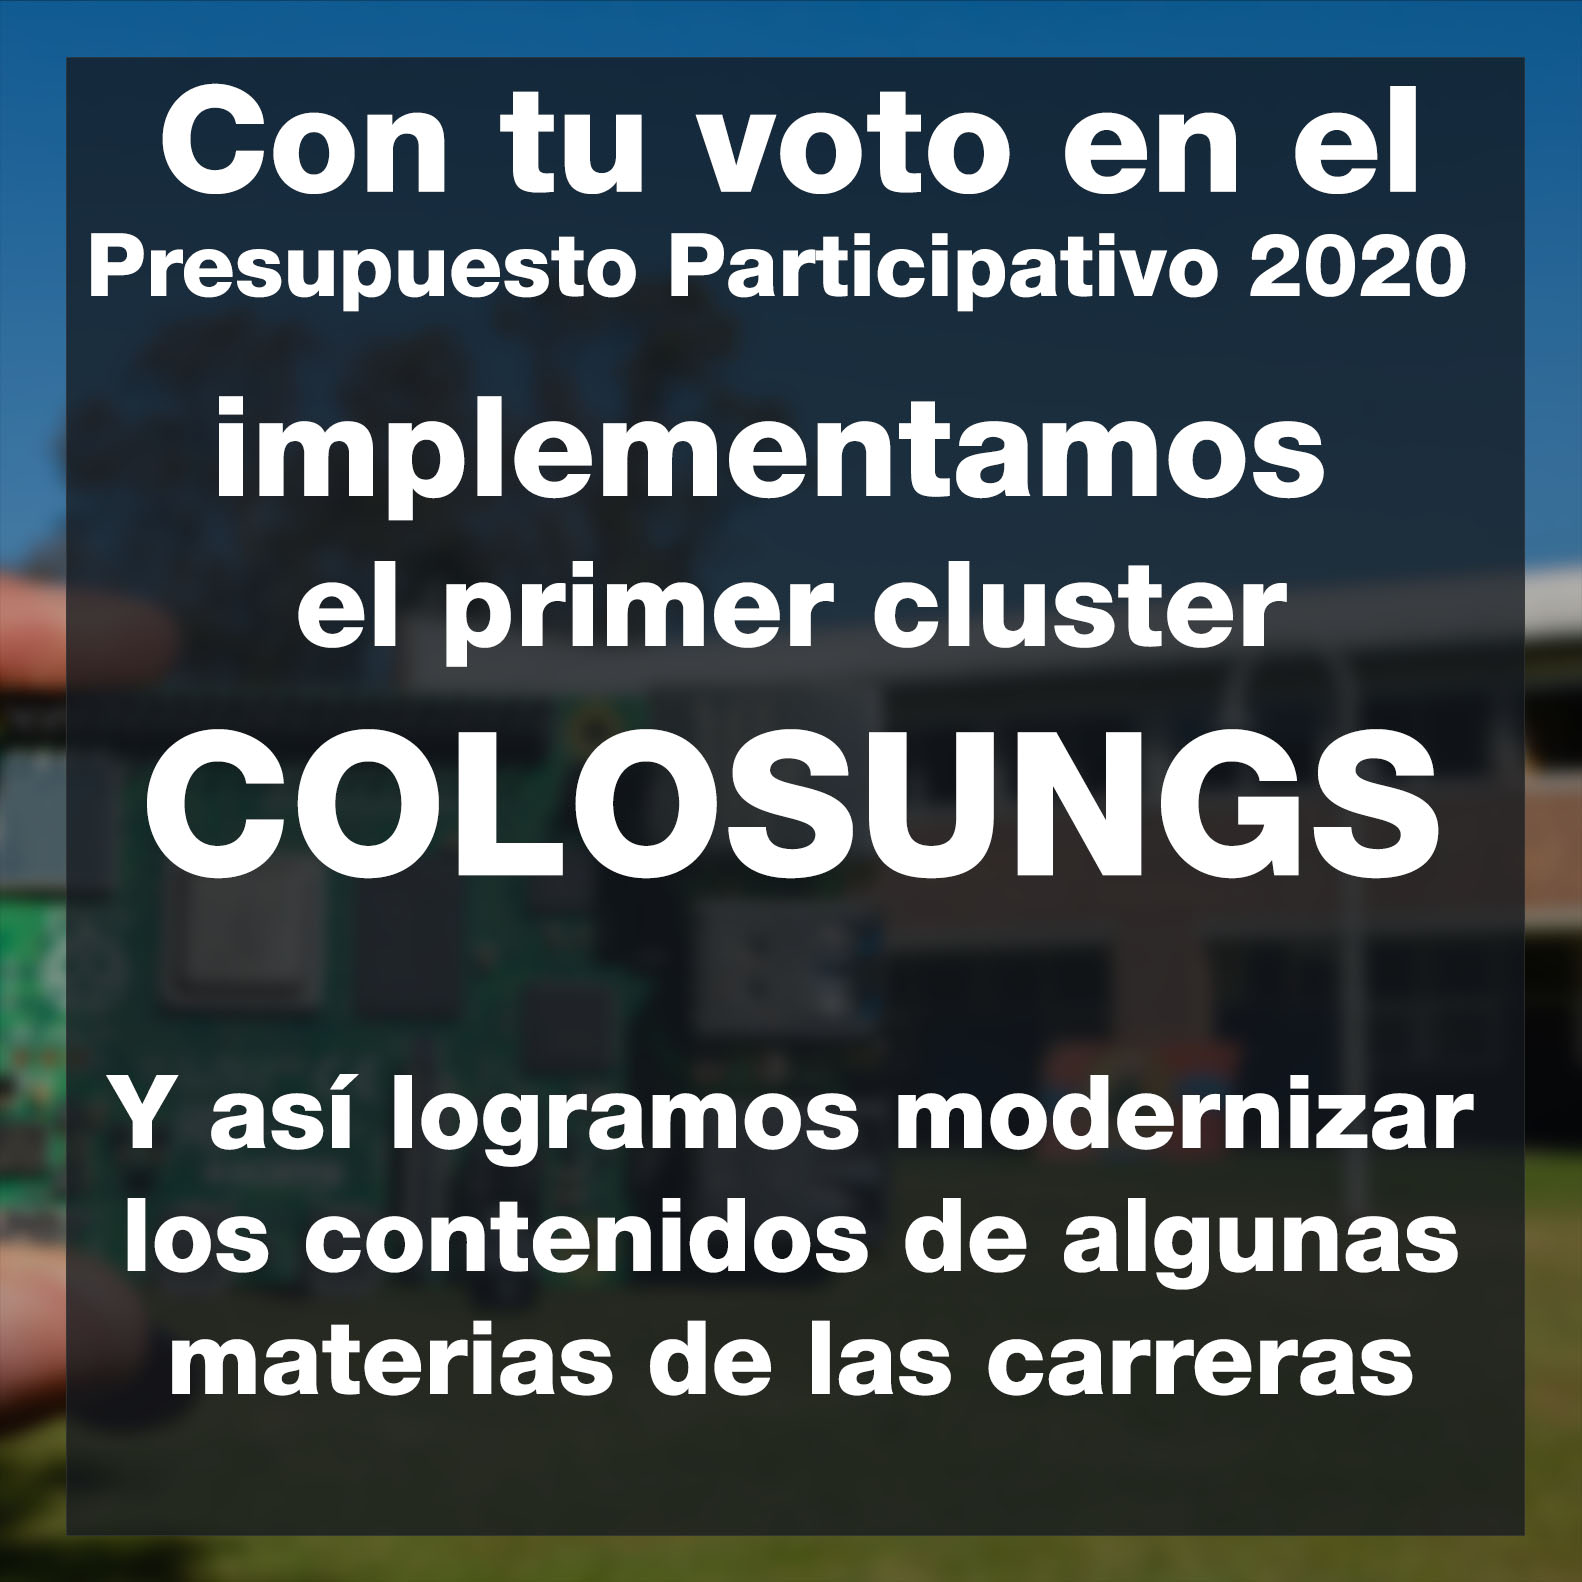 Con tu voto en el Presupuesto Participativo 2020 implementamos el primer cluster COLOSUNGS. Y Así logramos modernizar los contenidos de algunas materias de las carreras